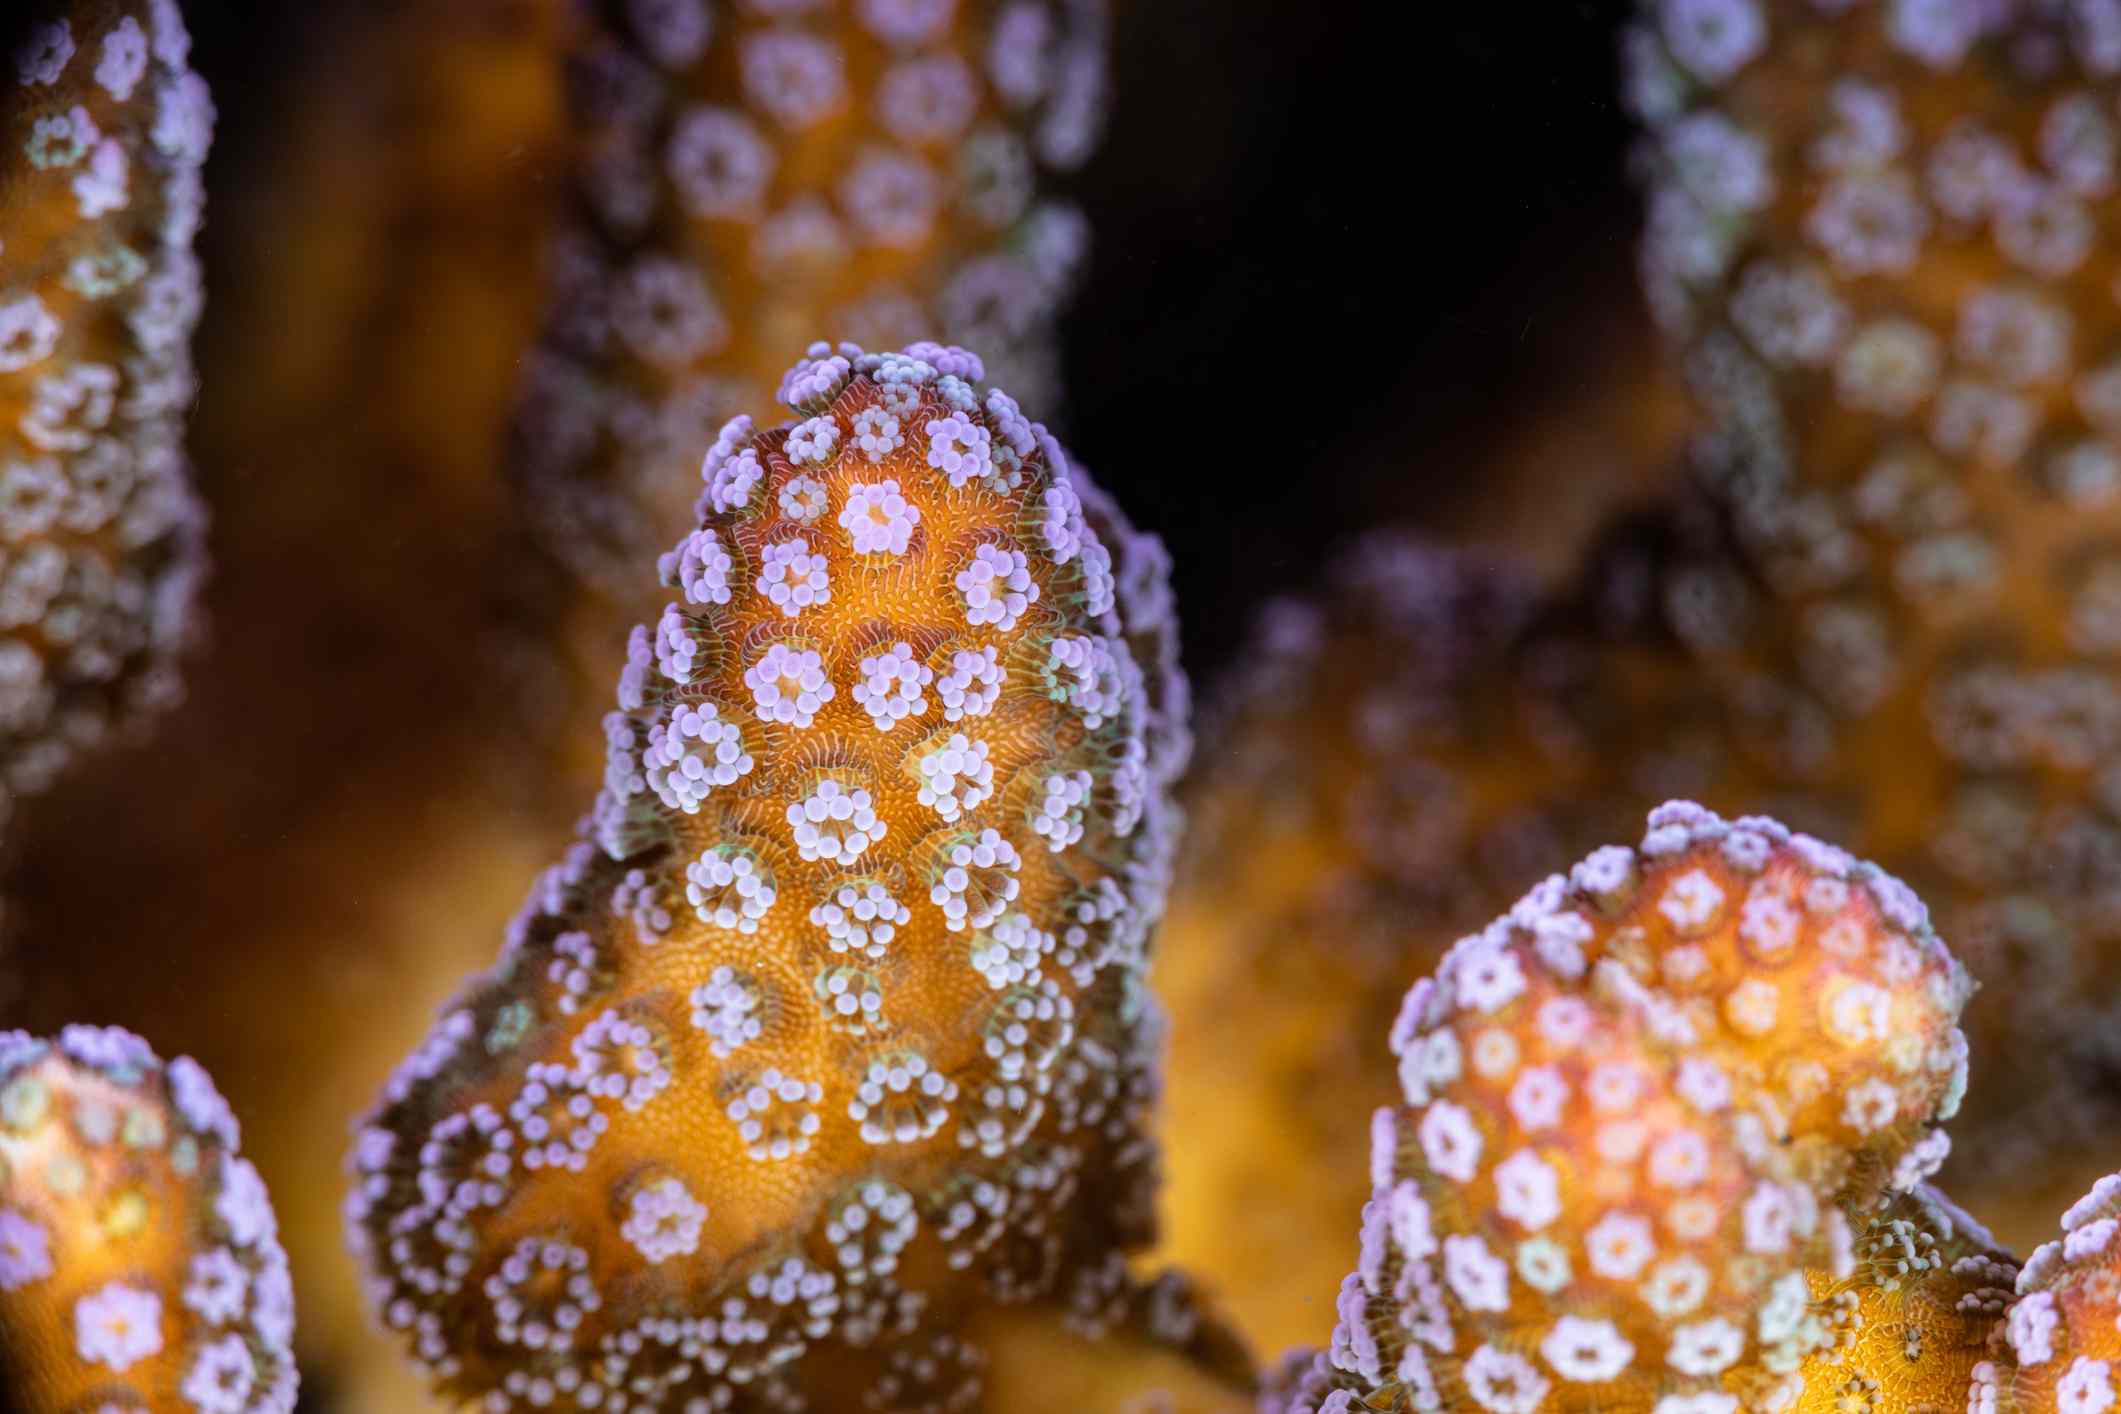 Detalles del pólipo de coral Seriatopora